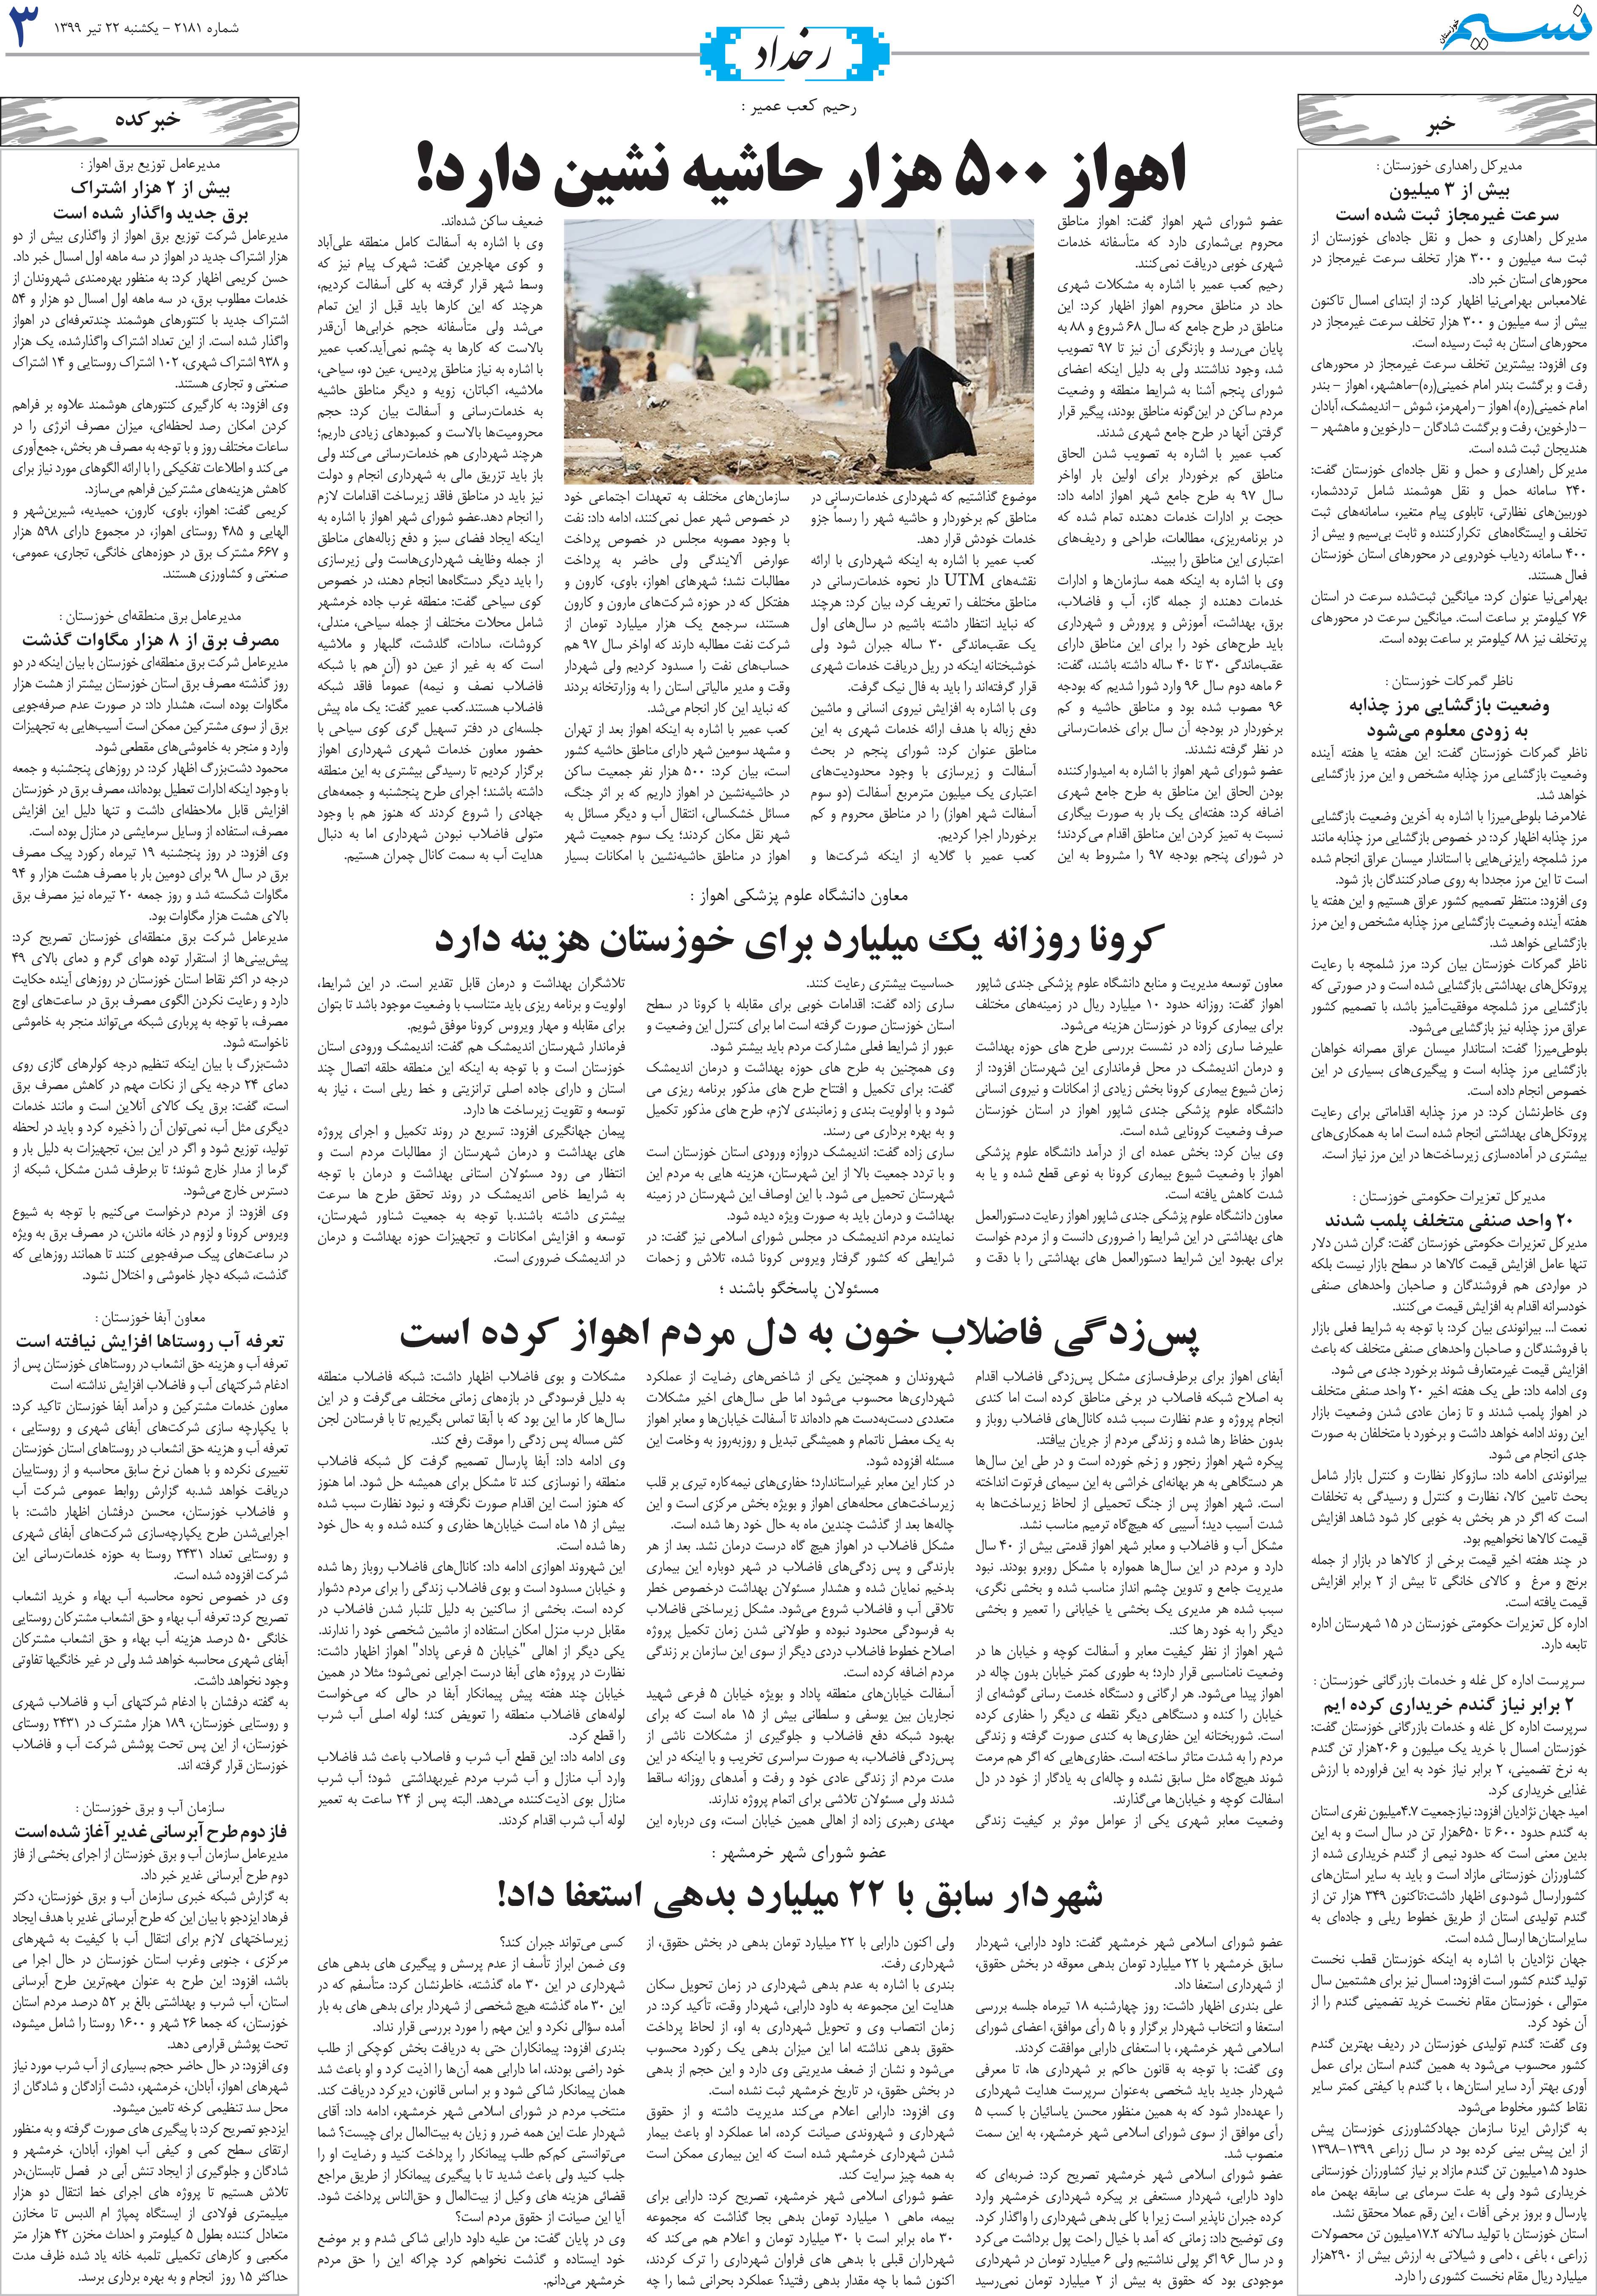 صفحه رخداد روزنامه نسیم شماره 2181